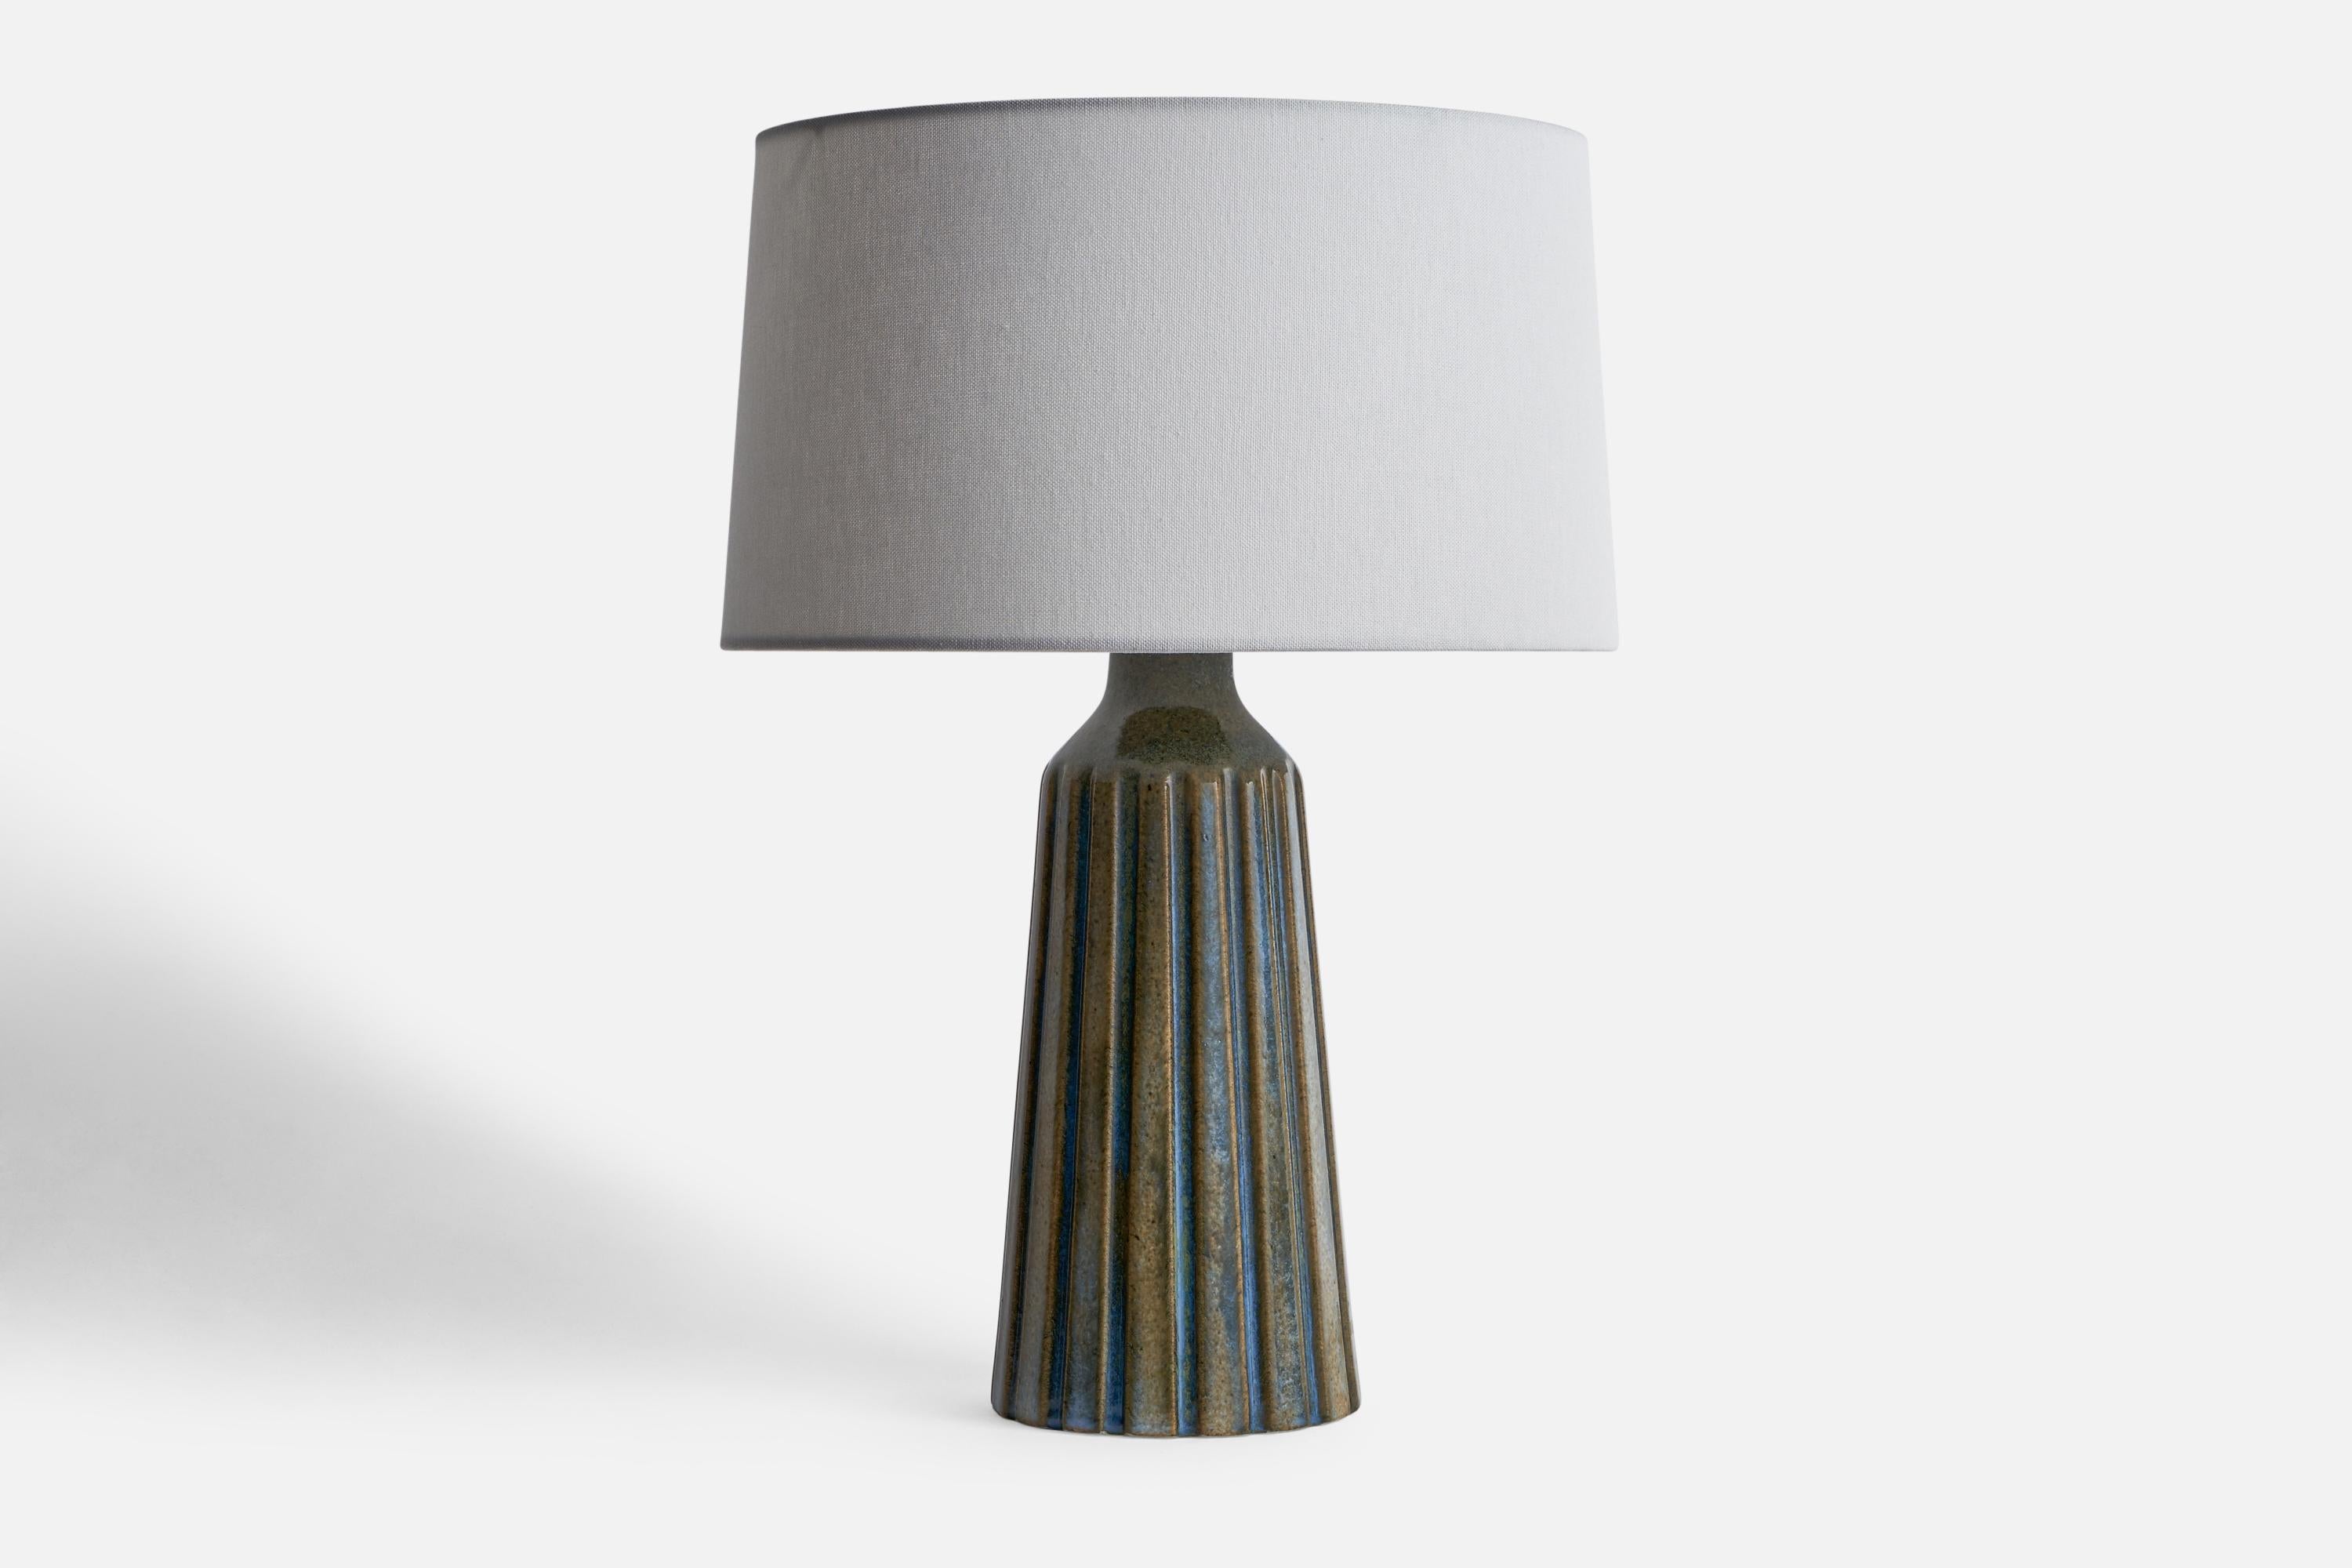 Tischlampe aus blauem und grau glasiertem Steingut, entworfen und hergestellt von Ego Stengods, Schweden, 1960er Jahre.

Abmessungen der Lampe (Zoll): 13,1